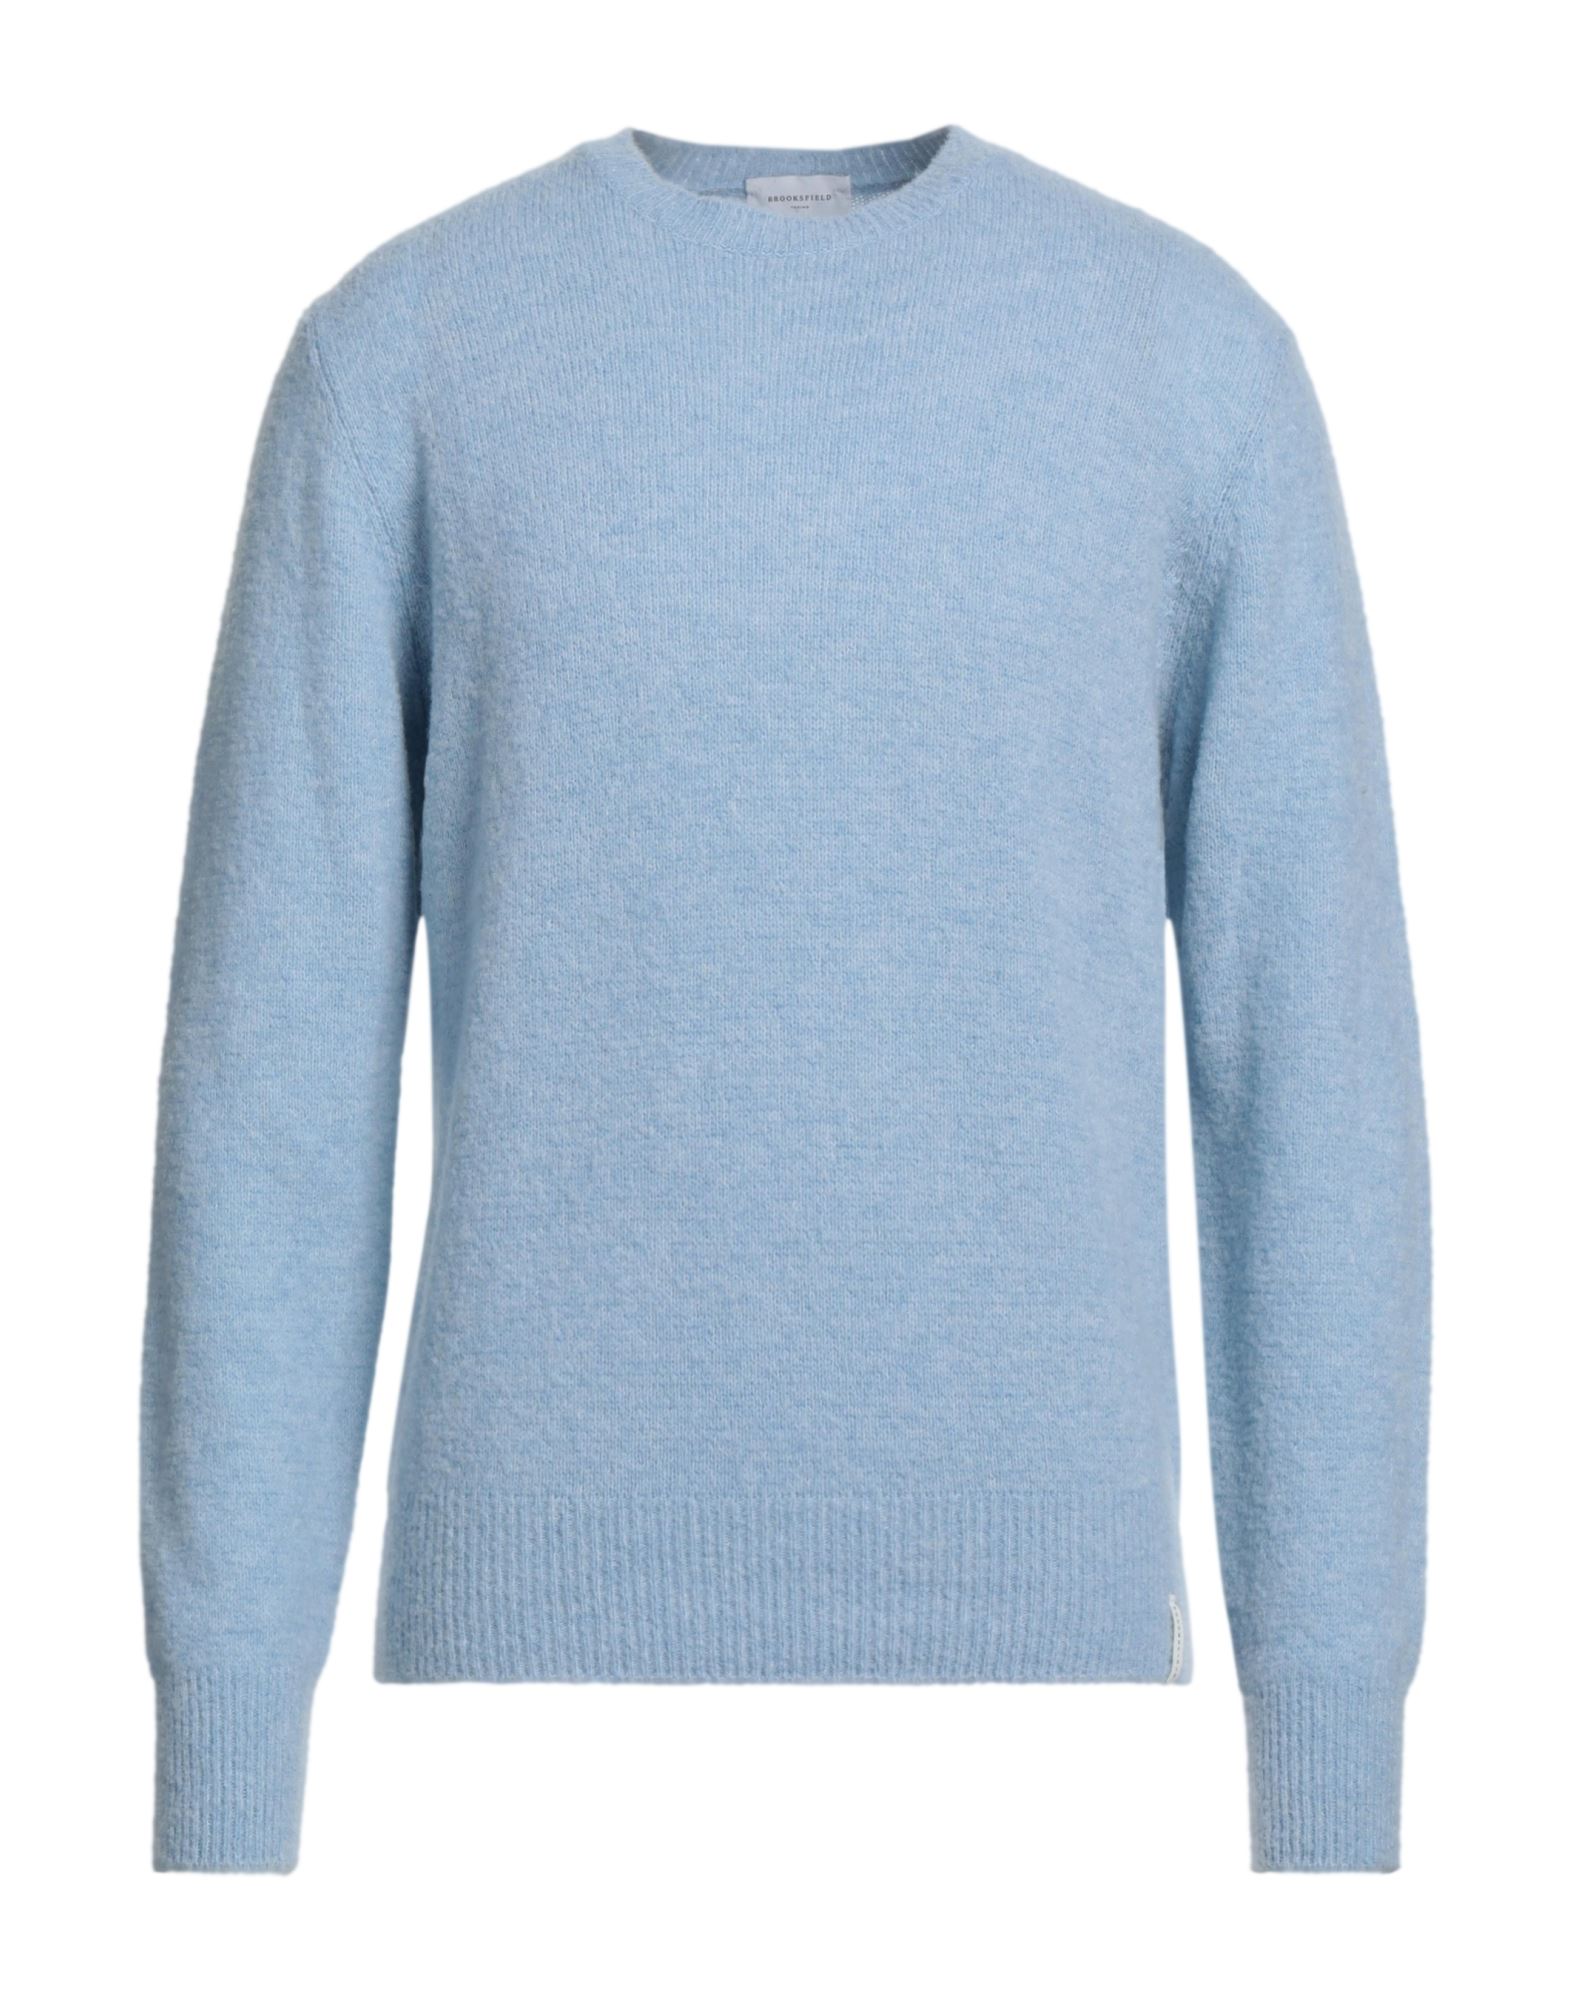 Brooksfield Man Sweater Sky Blue Size 44 Virgin Wool, Polyamide